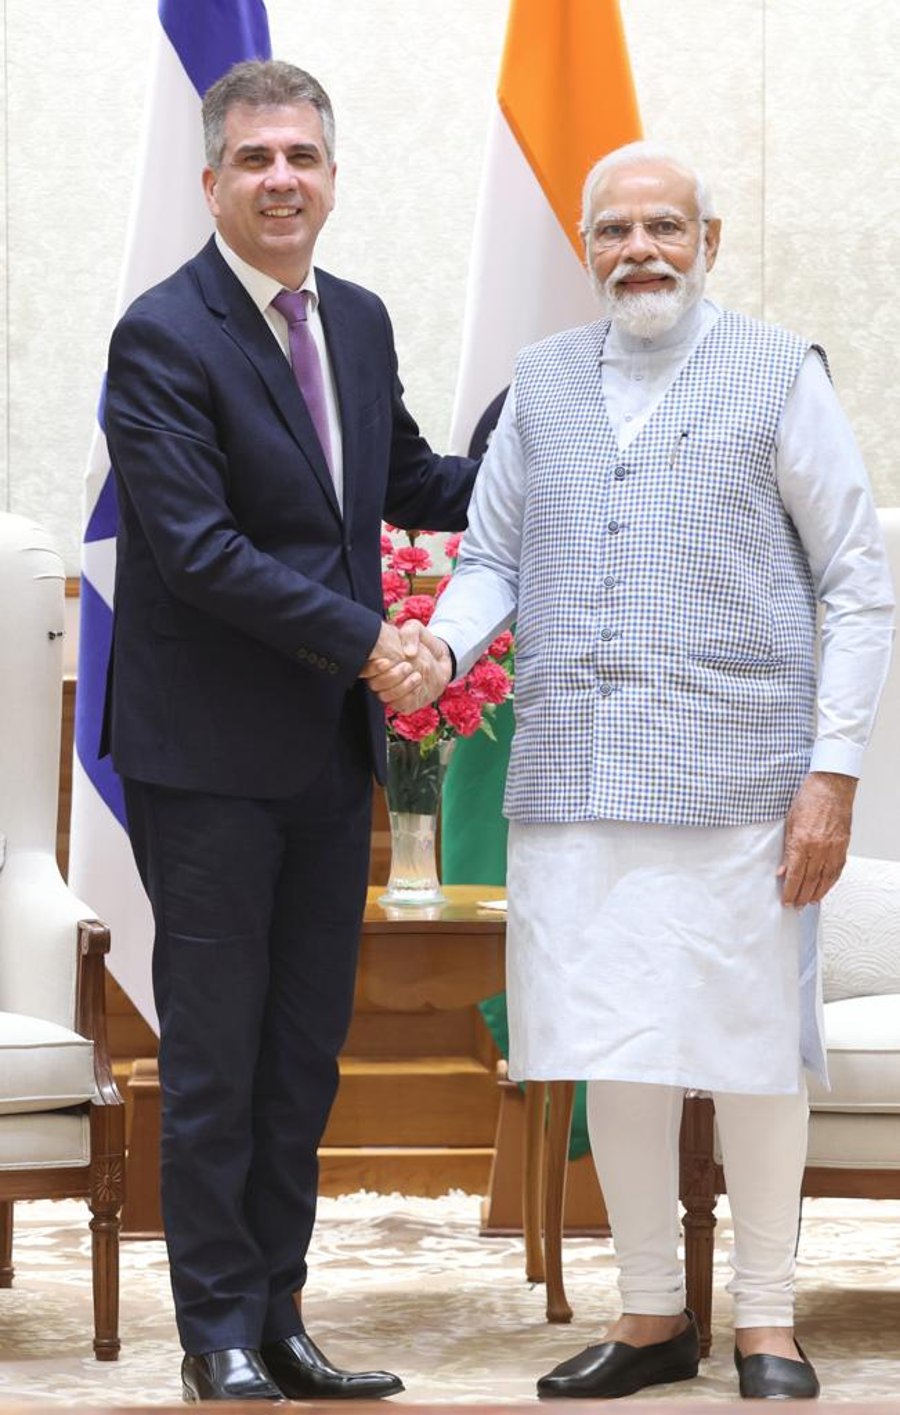 שר החוץ פגש את ראש ממשלת הודו: "בזכותו היחסים המיוחדים בינינו"